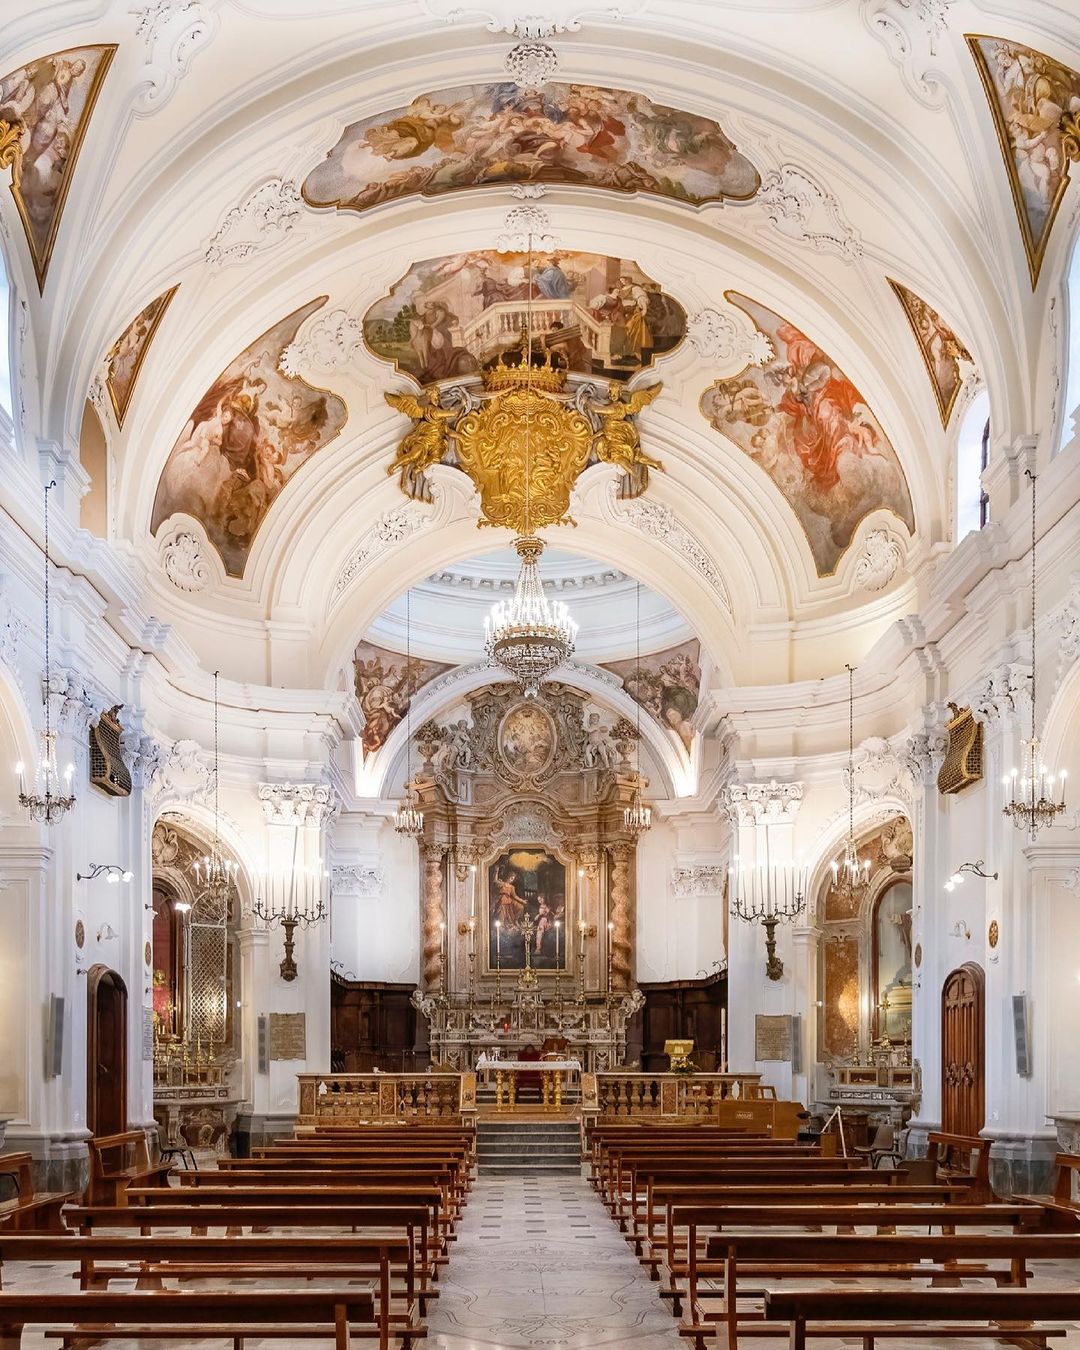 Church of the Annunziata